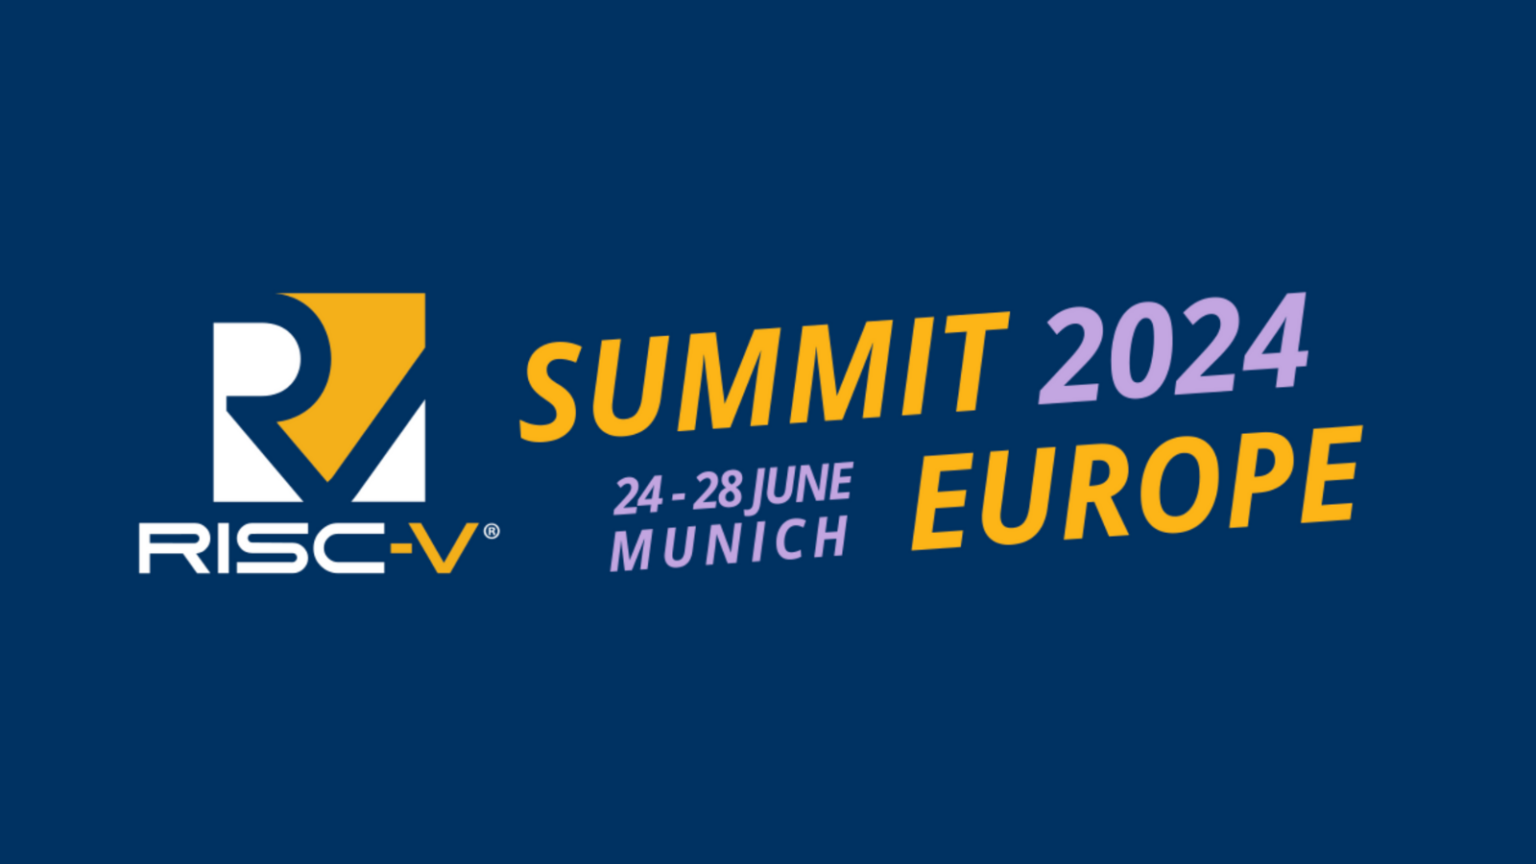 RISCV Summit Europe 2024 RISCV International